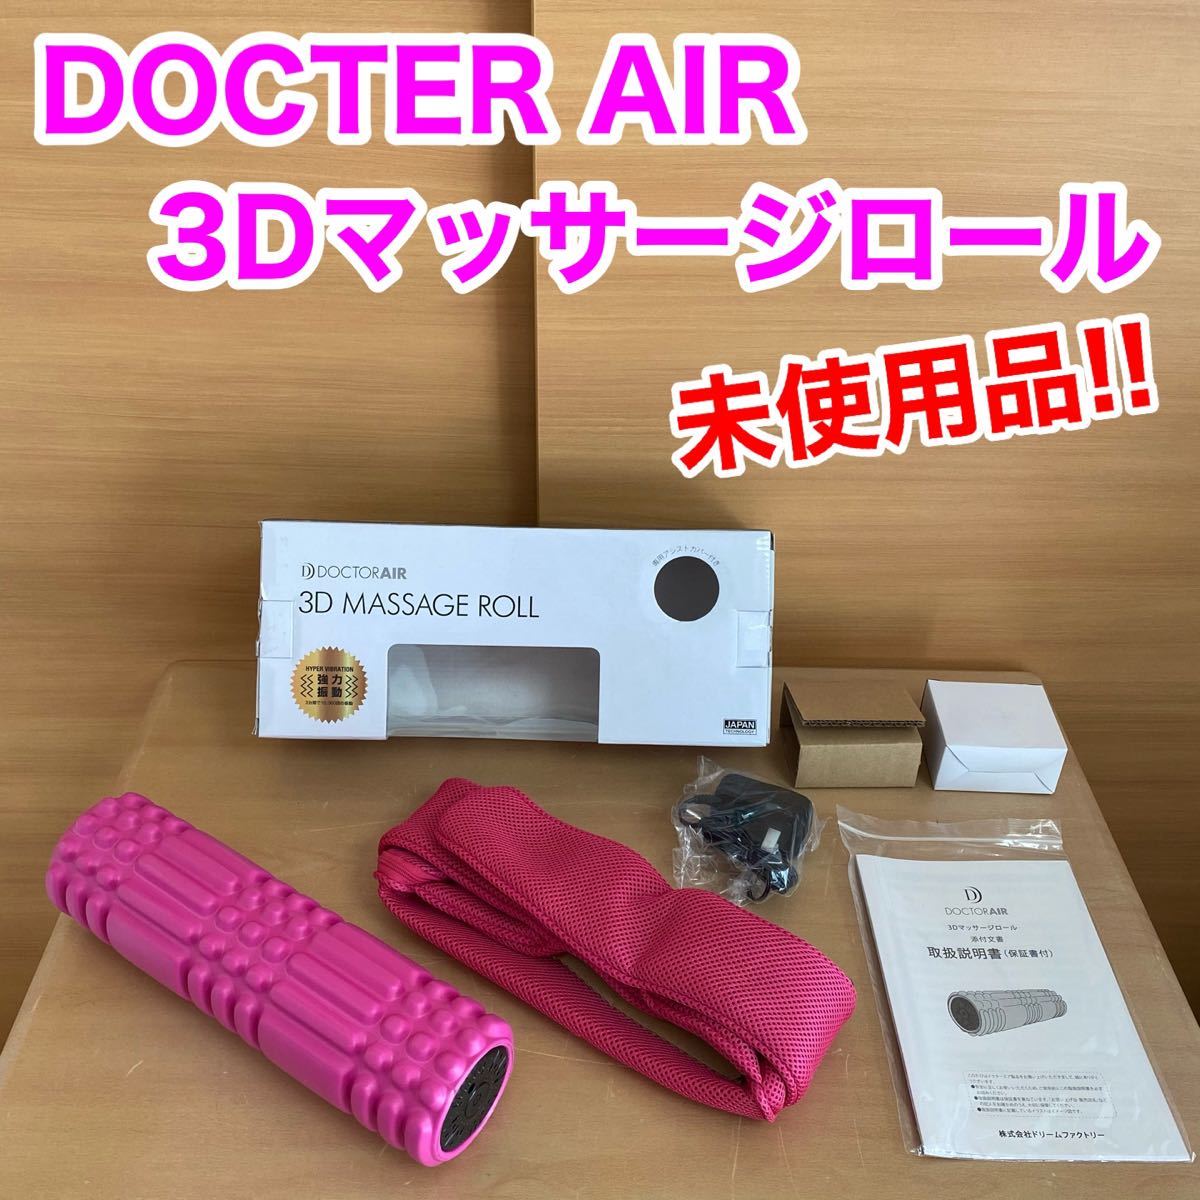 DOCTER AIR ドクターエア 3Dマッサージロール 未使用品 ピンク マッサージ器